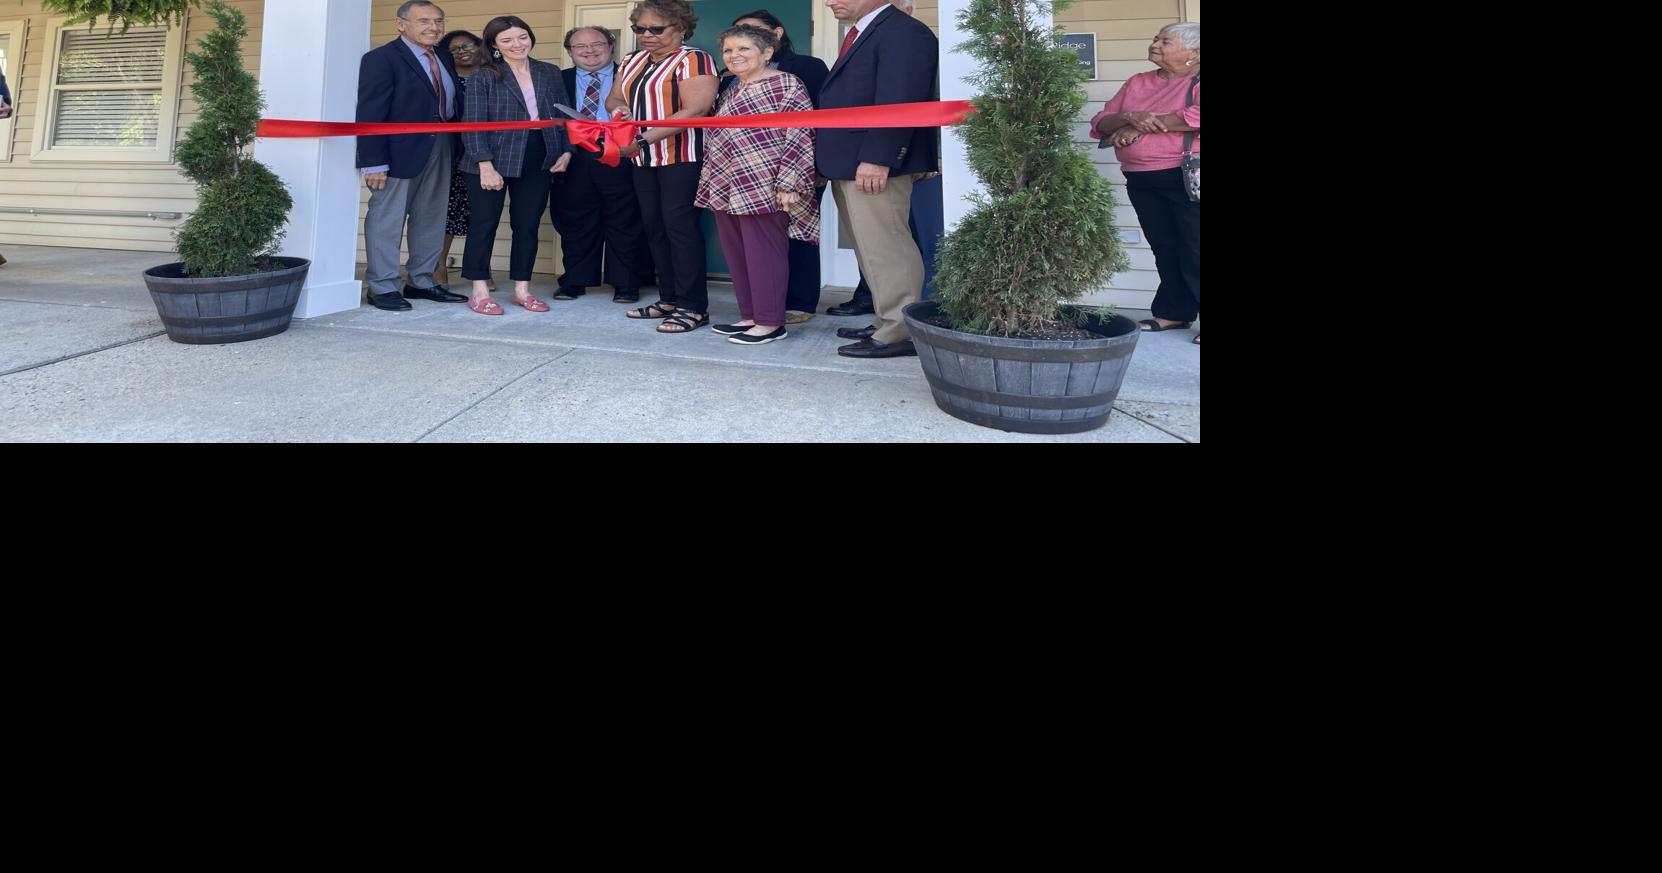 BRMC opens new community health center in Appomattox